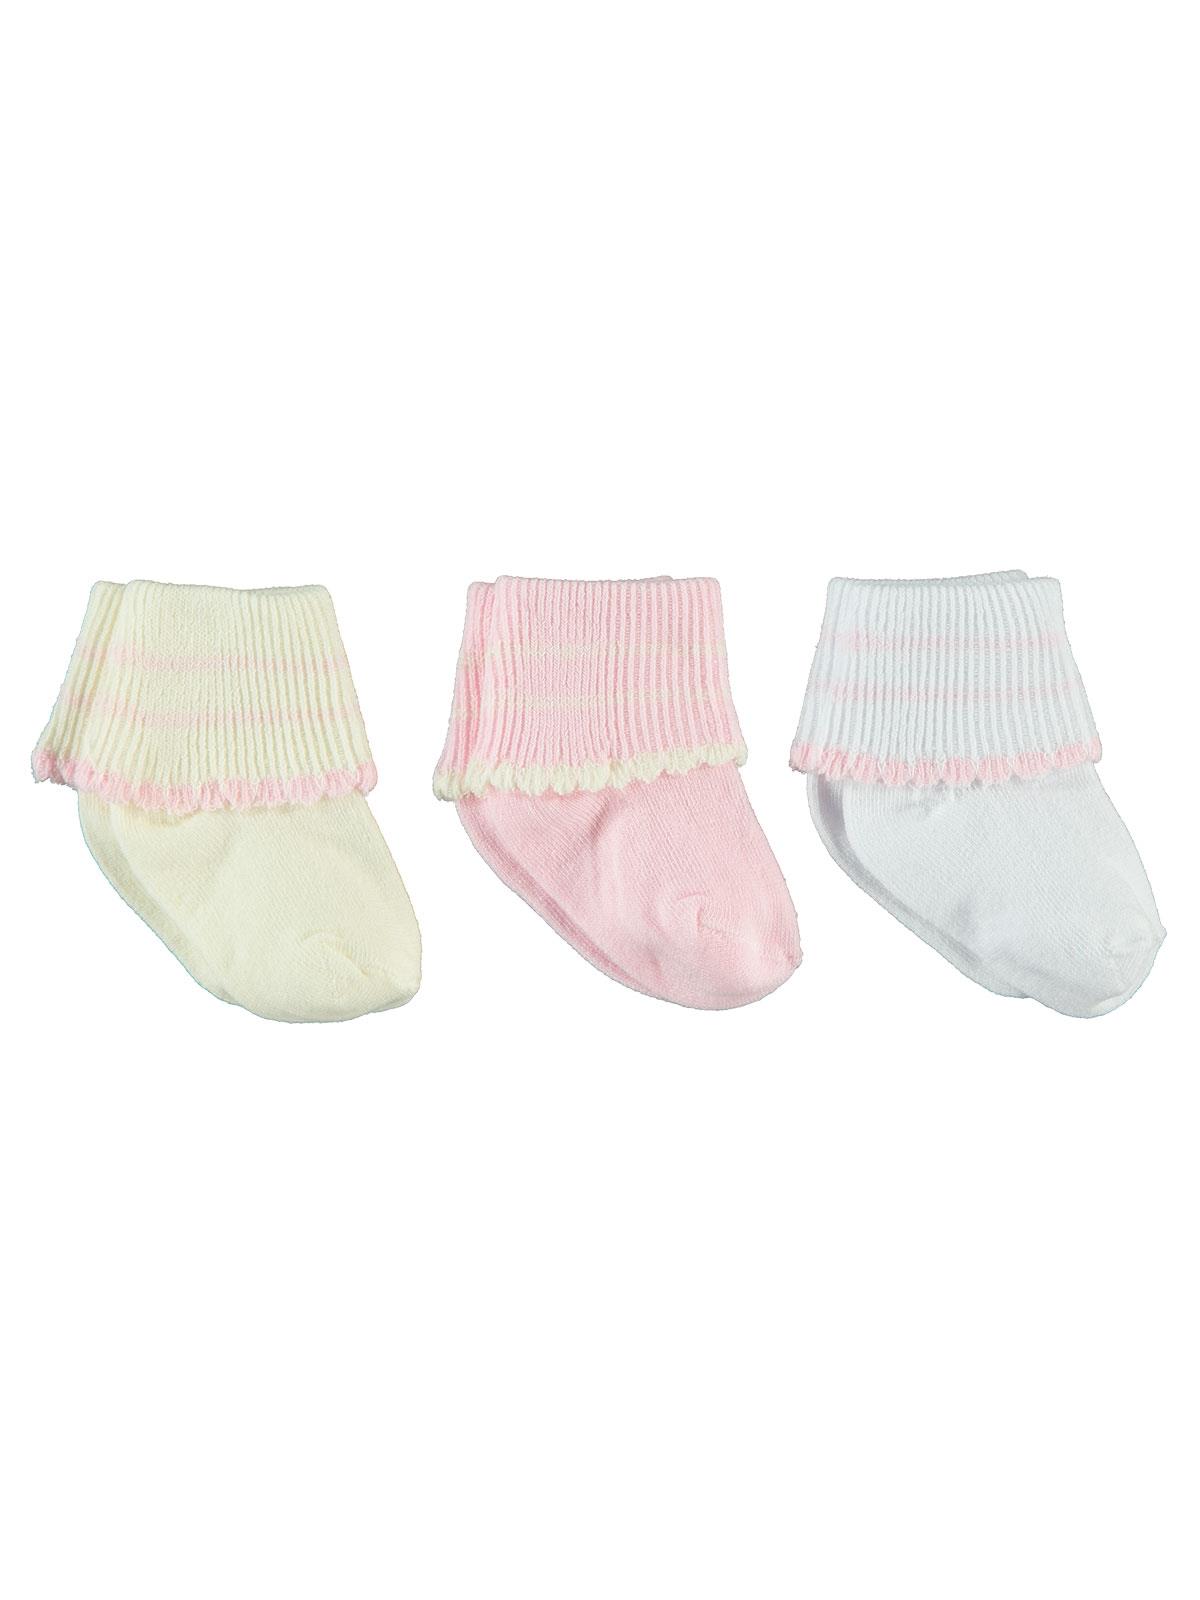 Civil Baby Kız Bebek 3'lü Çorap Set 0-6 Ay Pembe